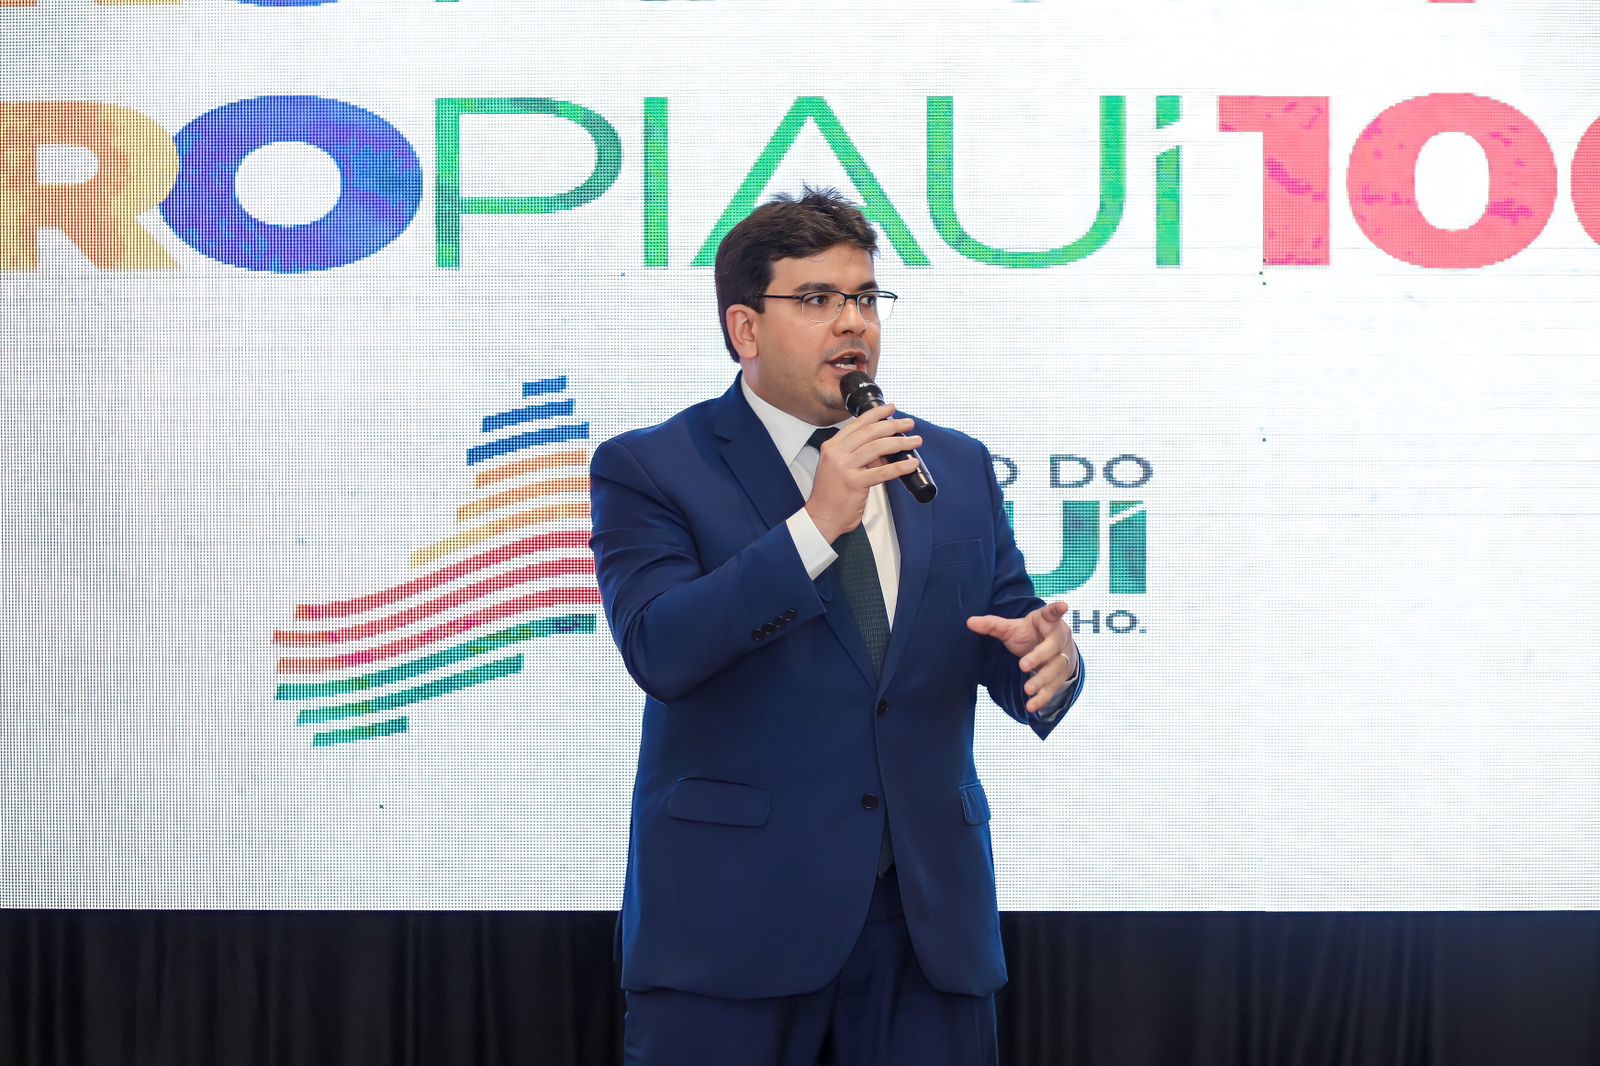 Governo lança nova versão do PRO Piauí com R$ 110 bilhões em investimentos  - Cidadeverde.com